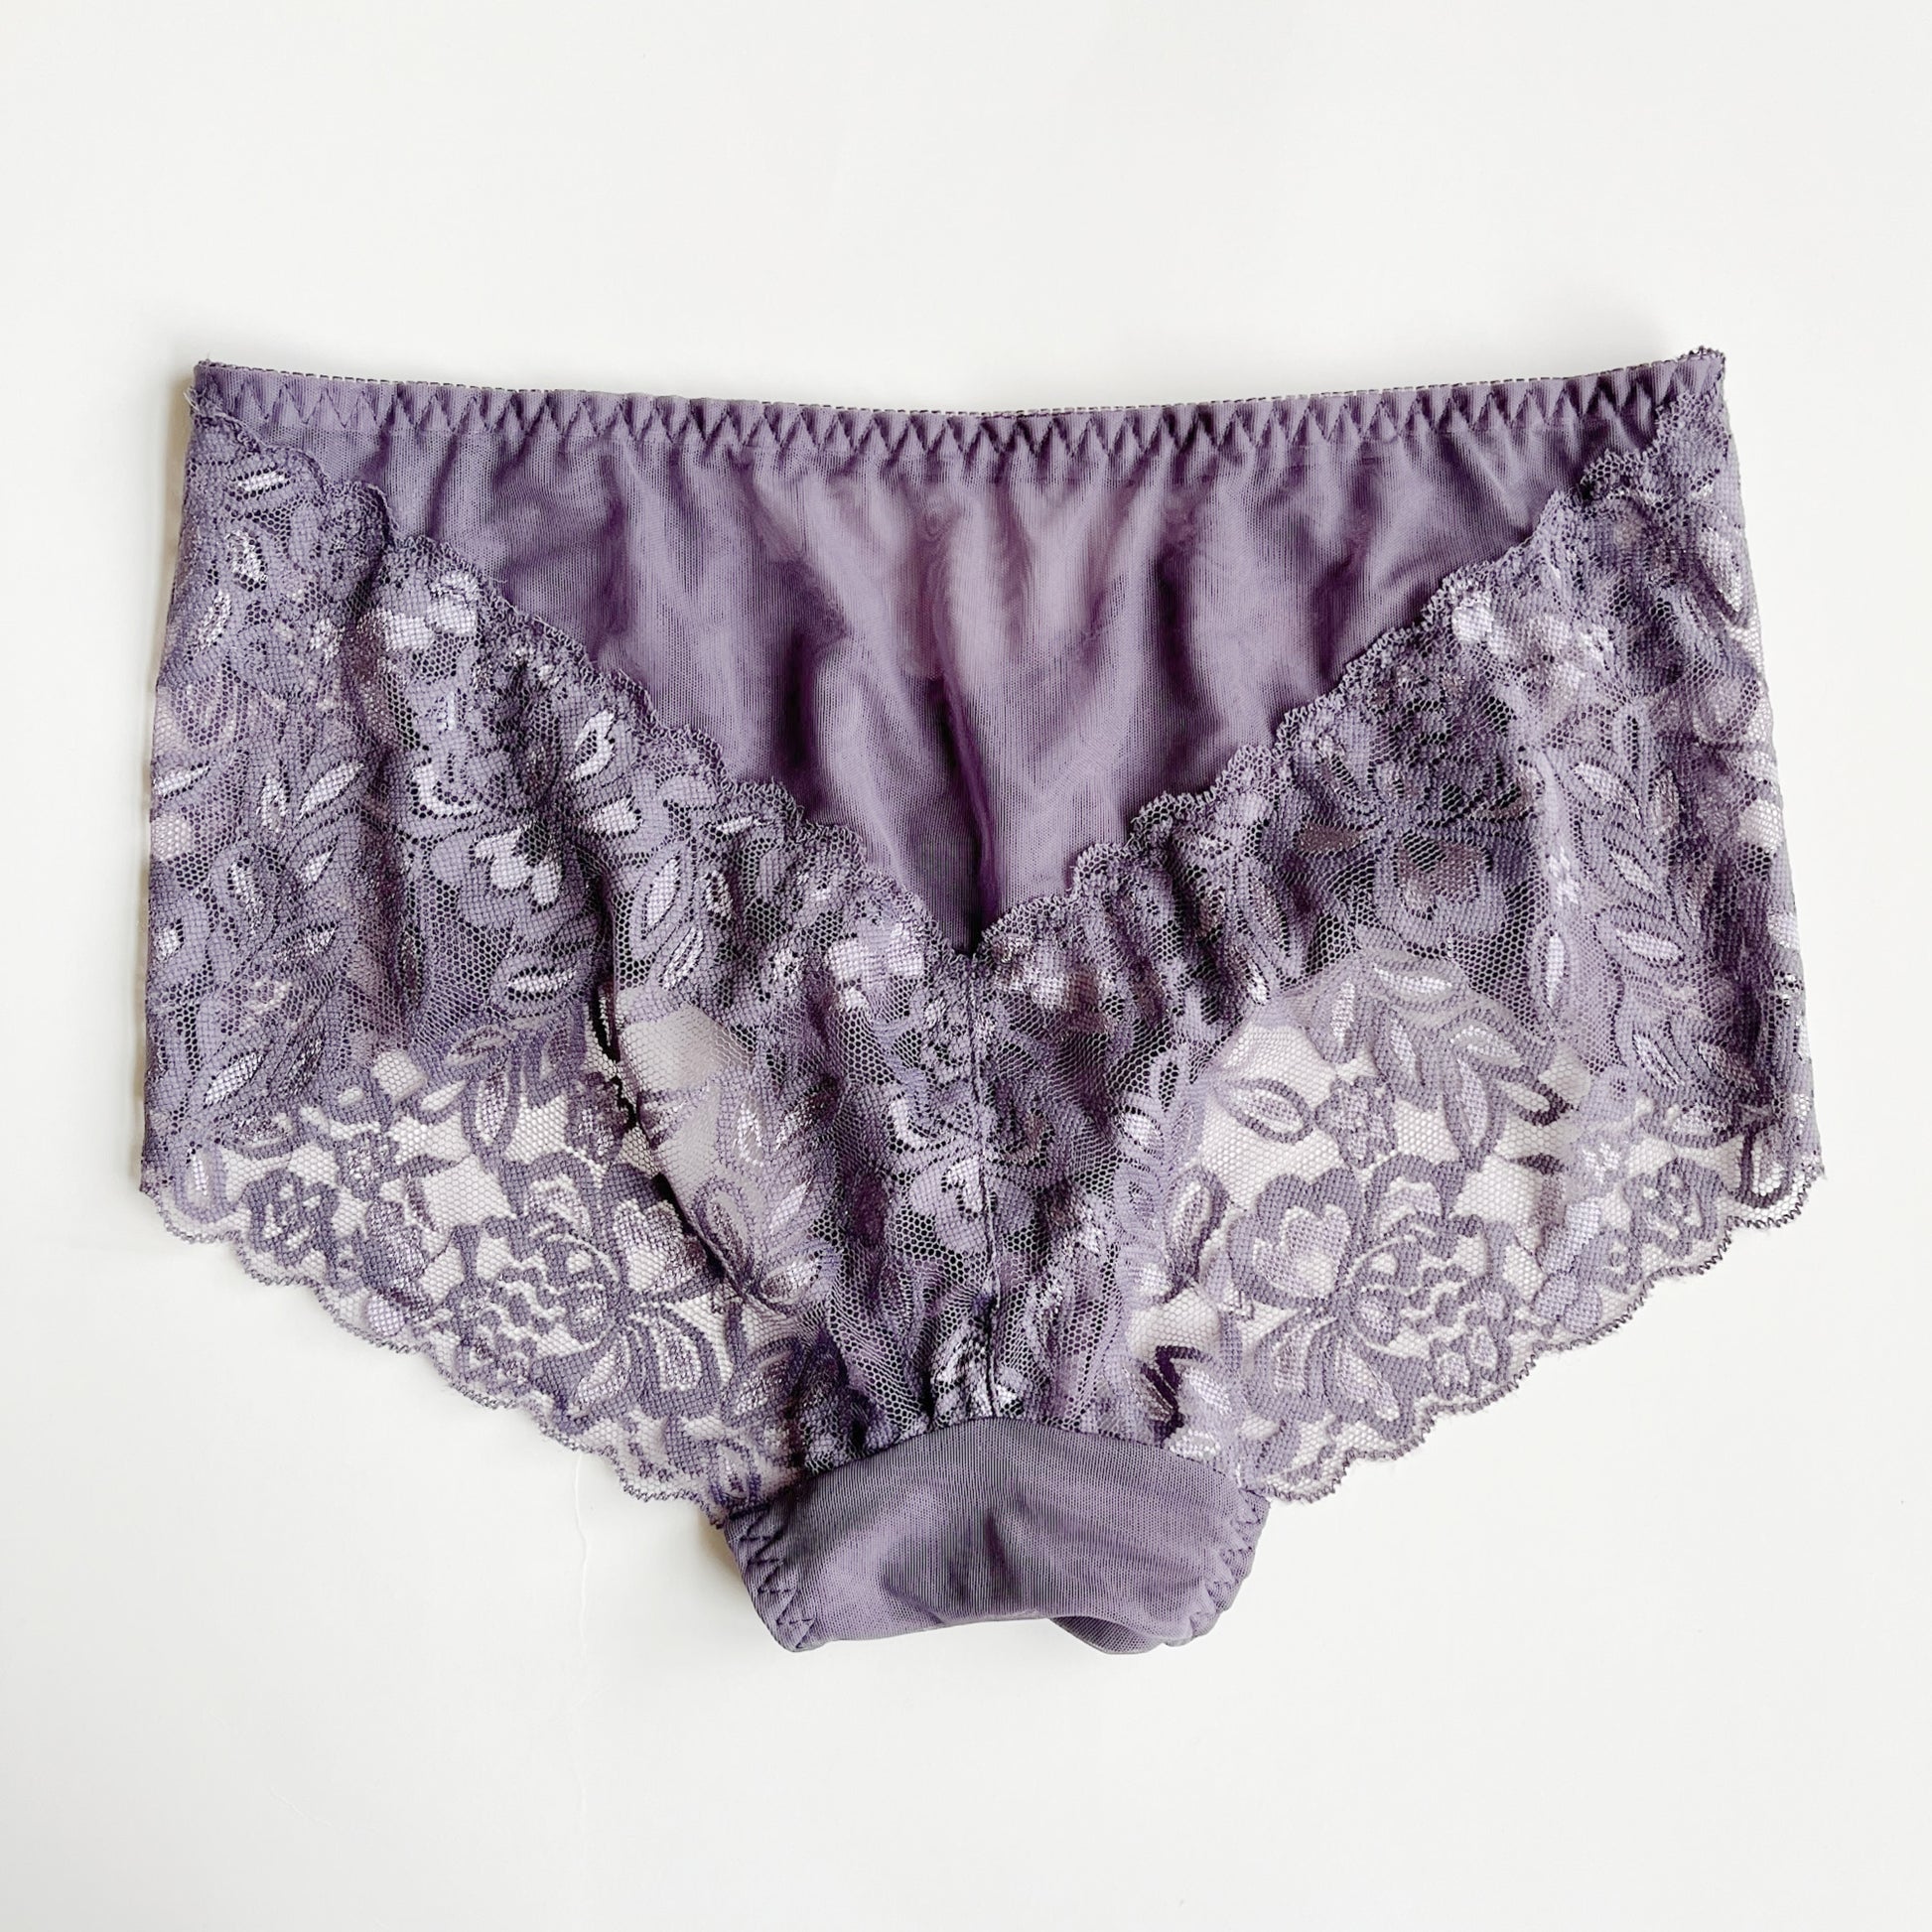 Pisexur Women's briefs underwear Women's Chiffon Lace Thin Style